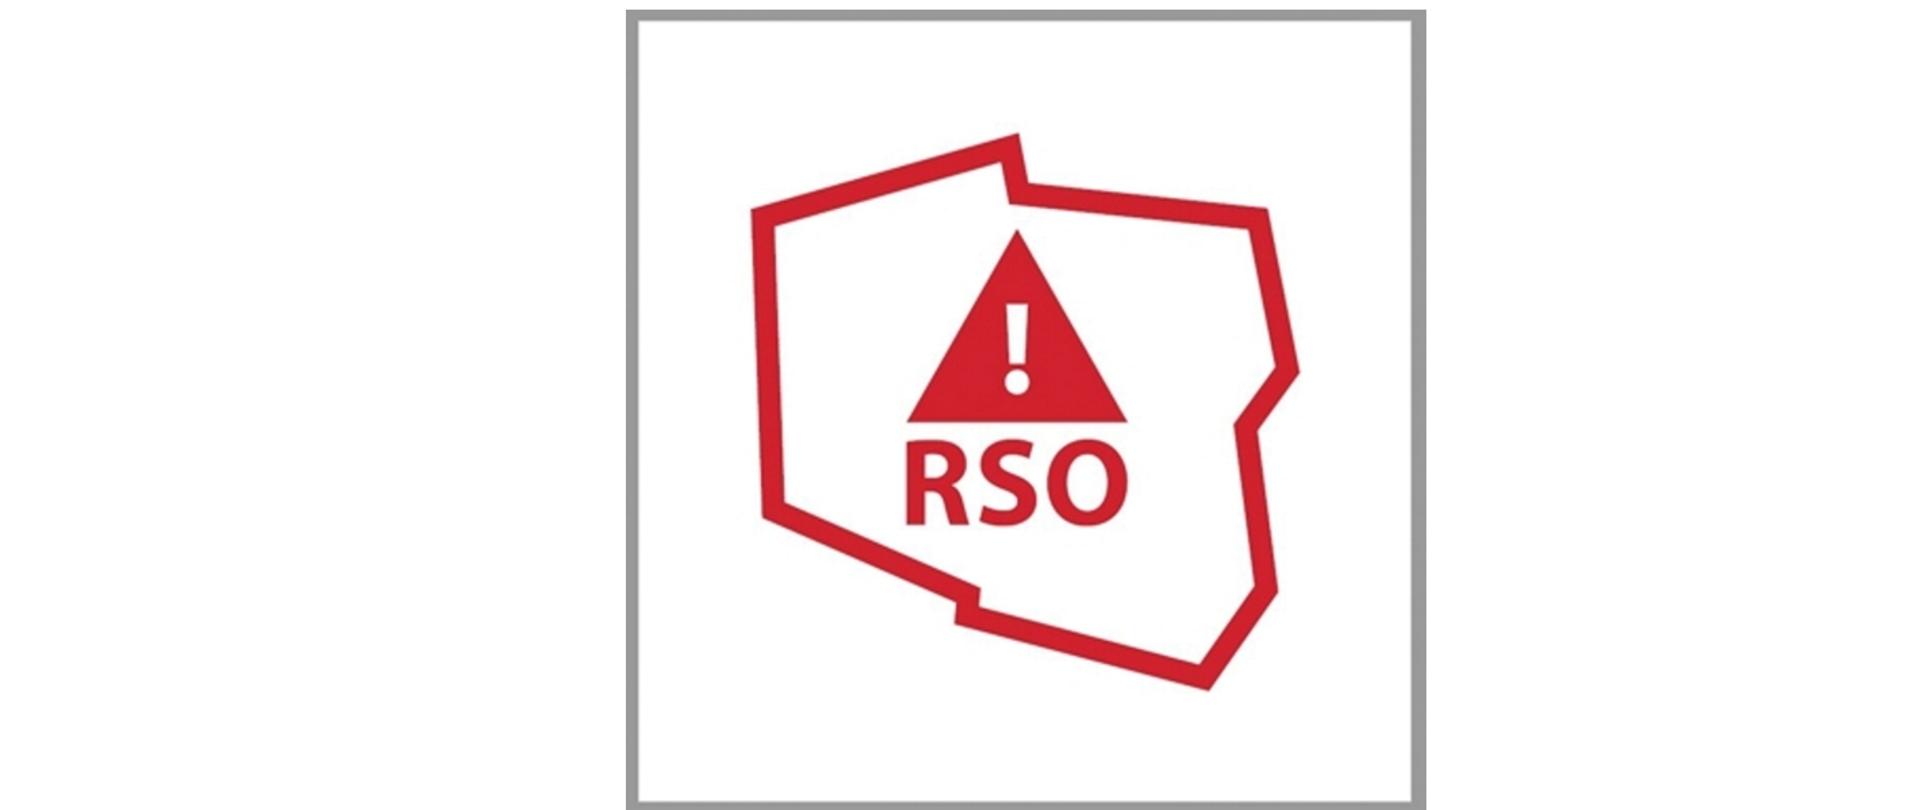 Logo przedstawia zaznaczony na czerwono kontur granic Polski, wewnątrz umieszczono czerwony równoramienny trójkąt, na nim biały wykrzyknik. Pod trójkątem podpis RSO.